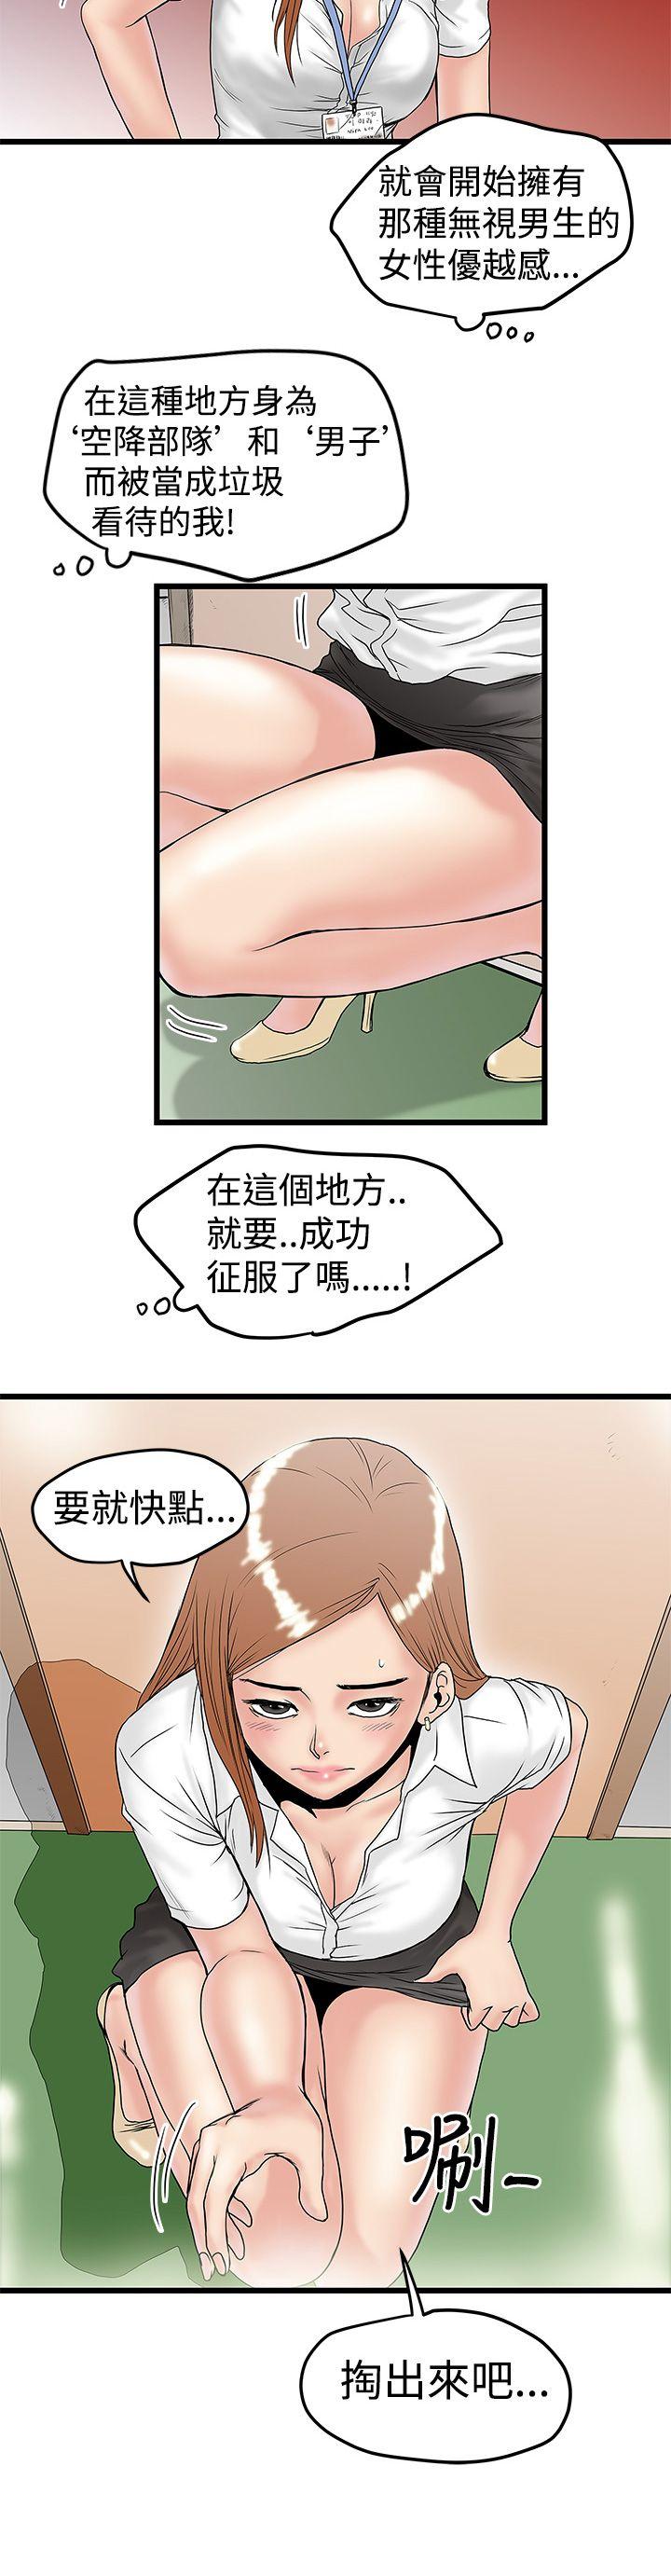 韩国污漫画 想像狂熱 第12话 6